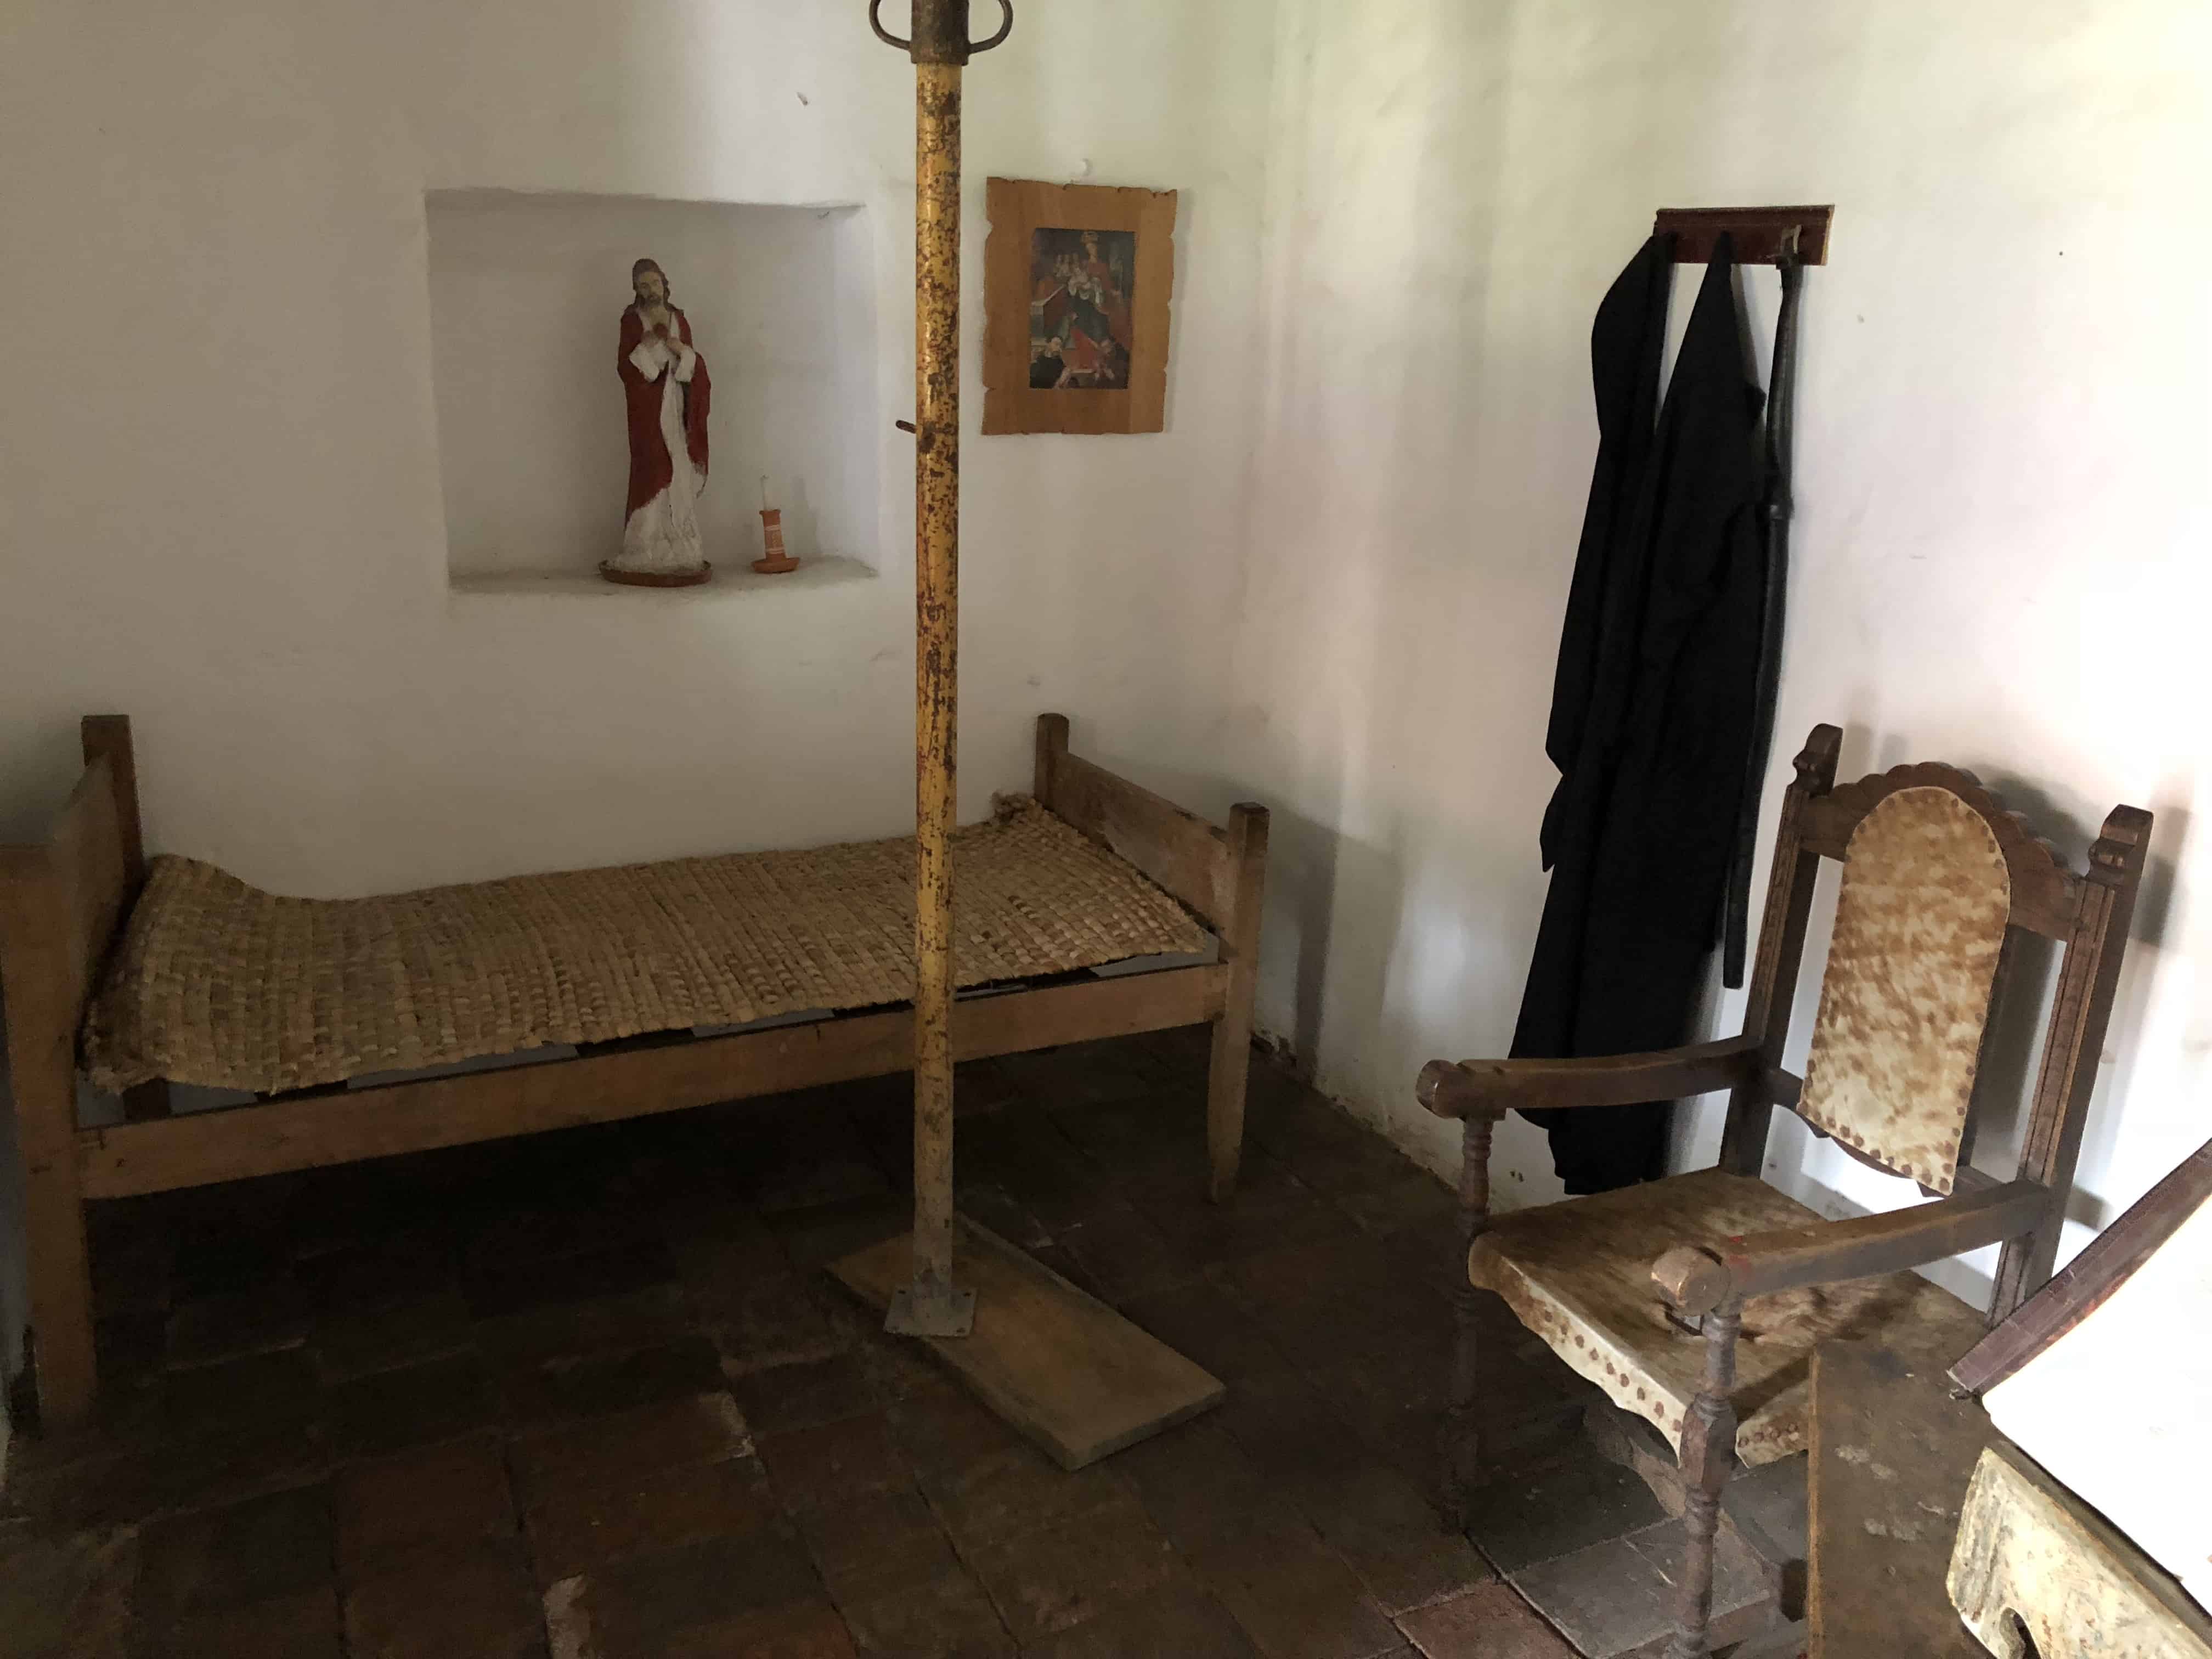 Monk's cell at La Candelaria Monastery, Boyacá, Colombia